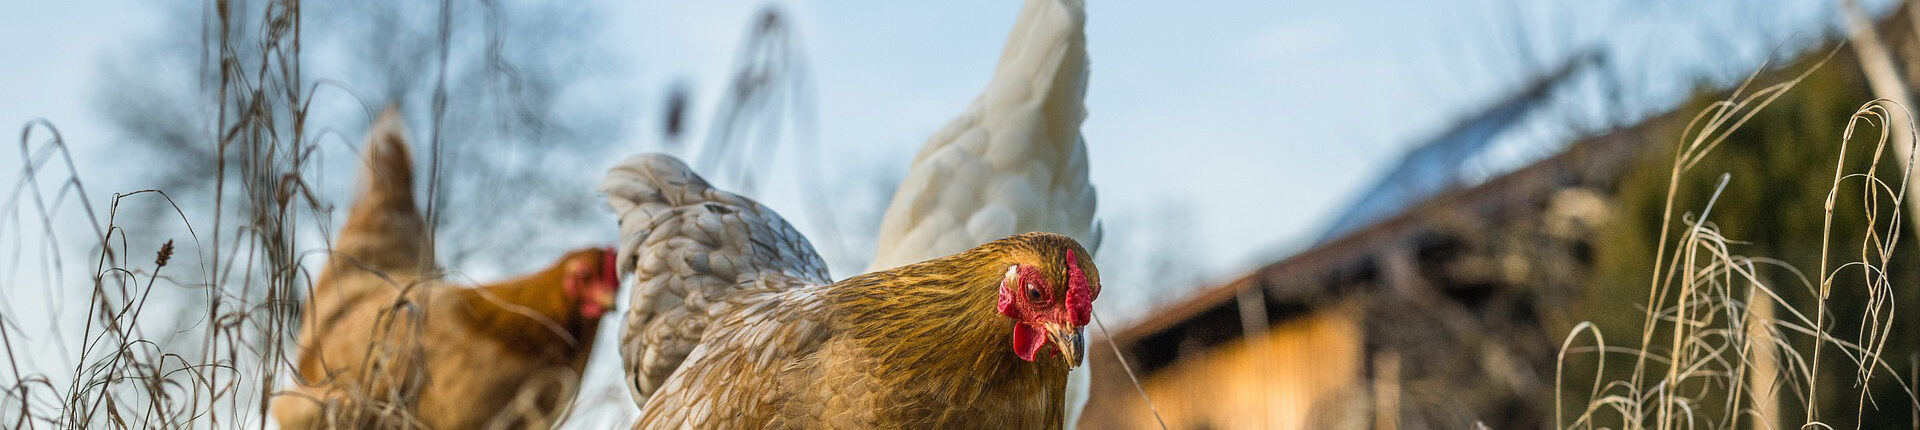 Grippe aviaire : particuliers, déclarez vos oiseaux !